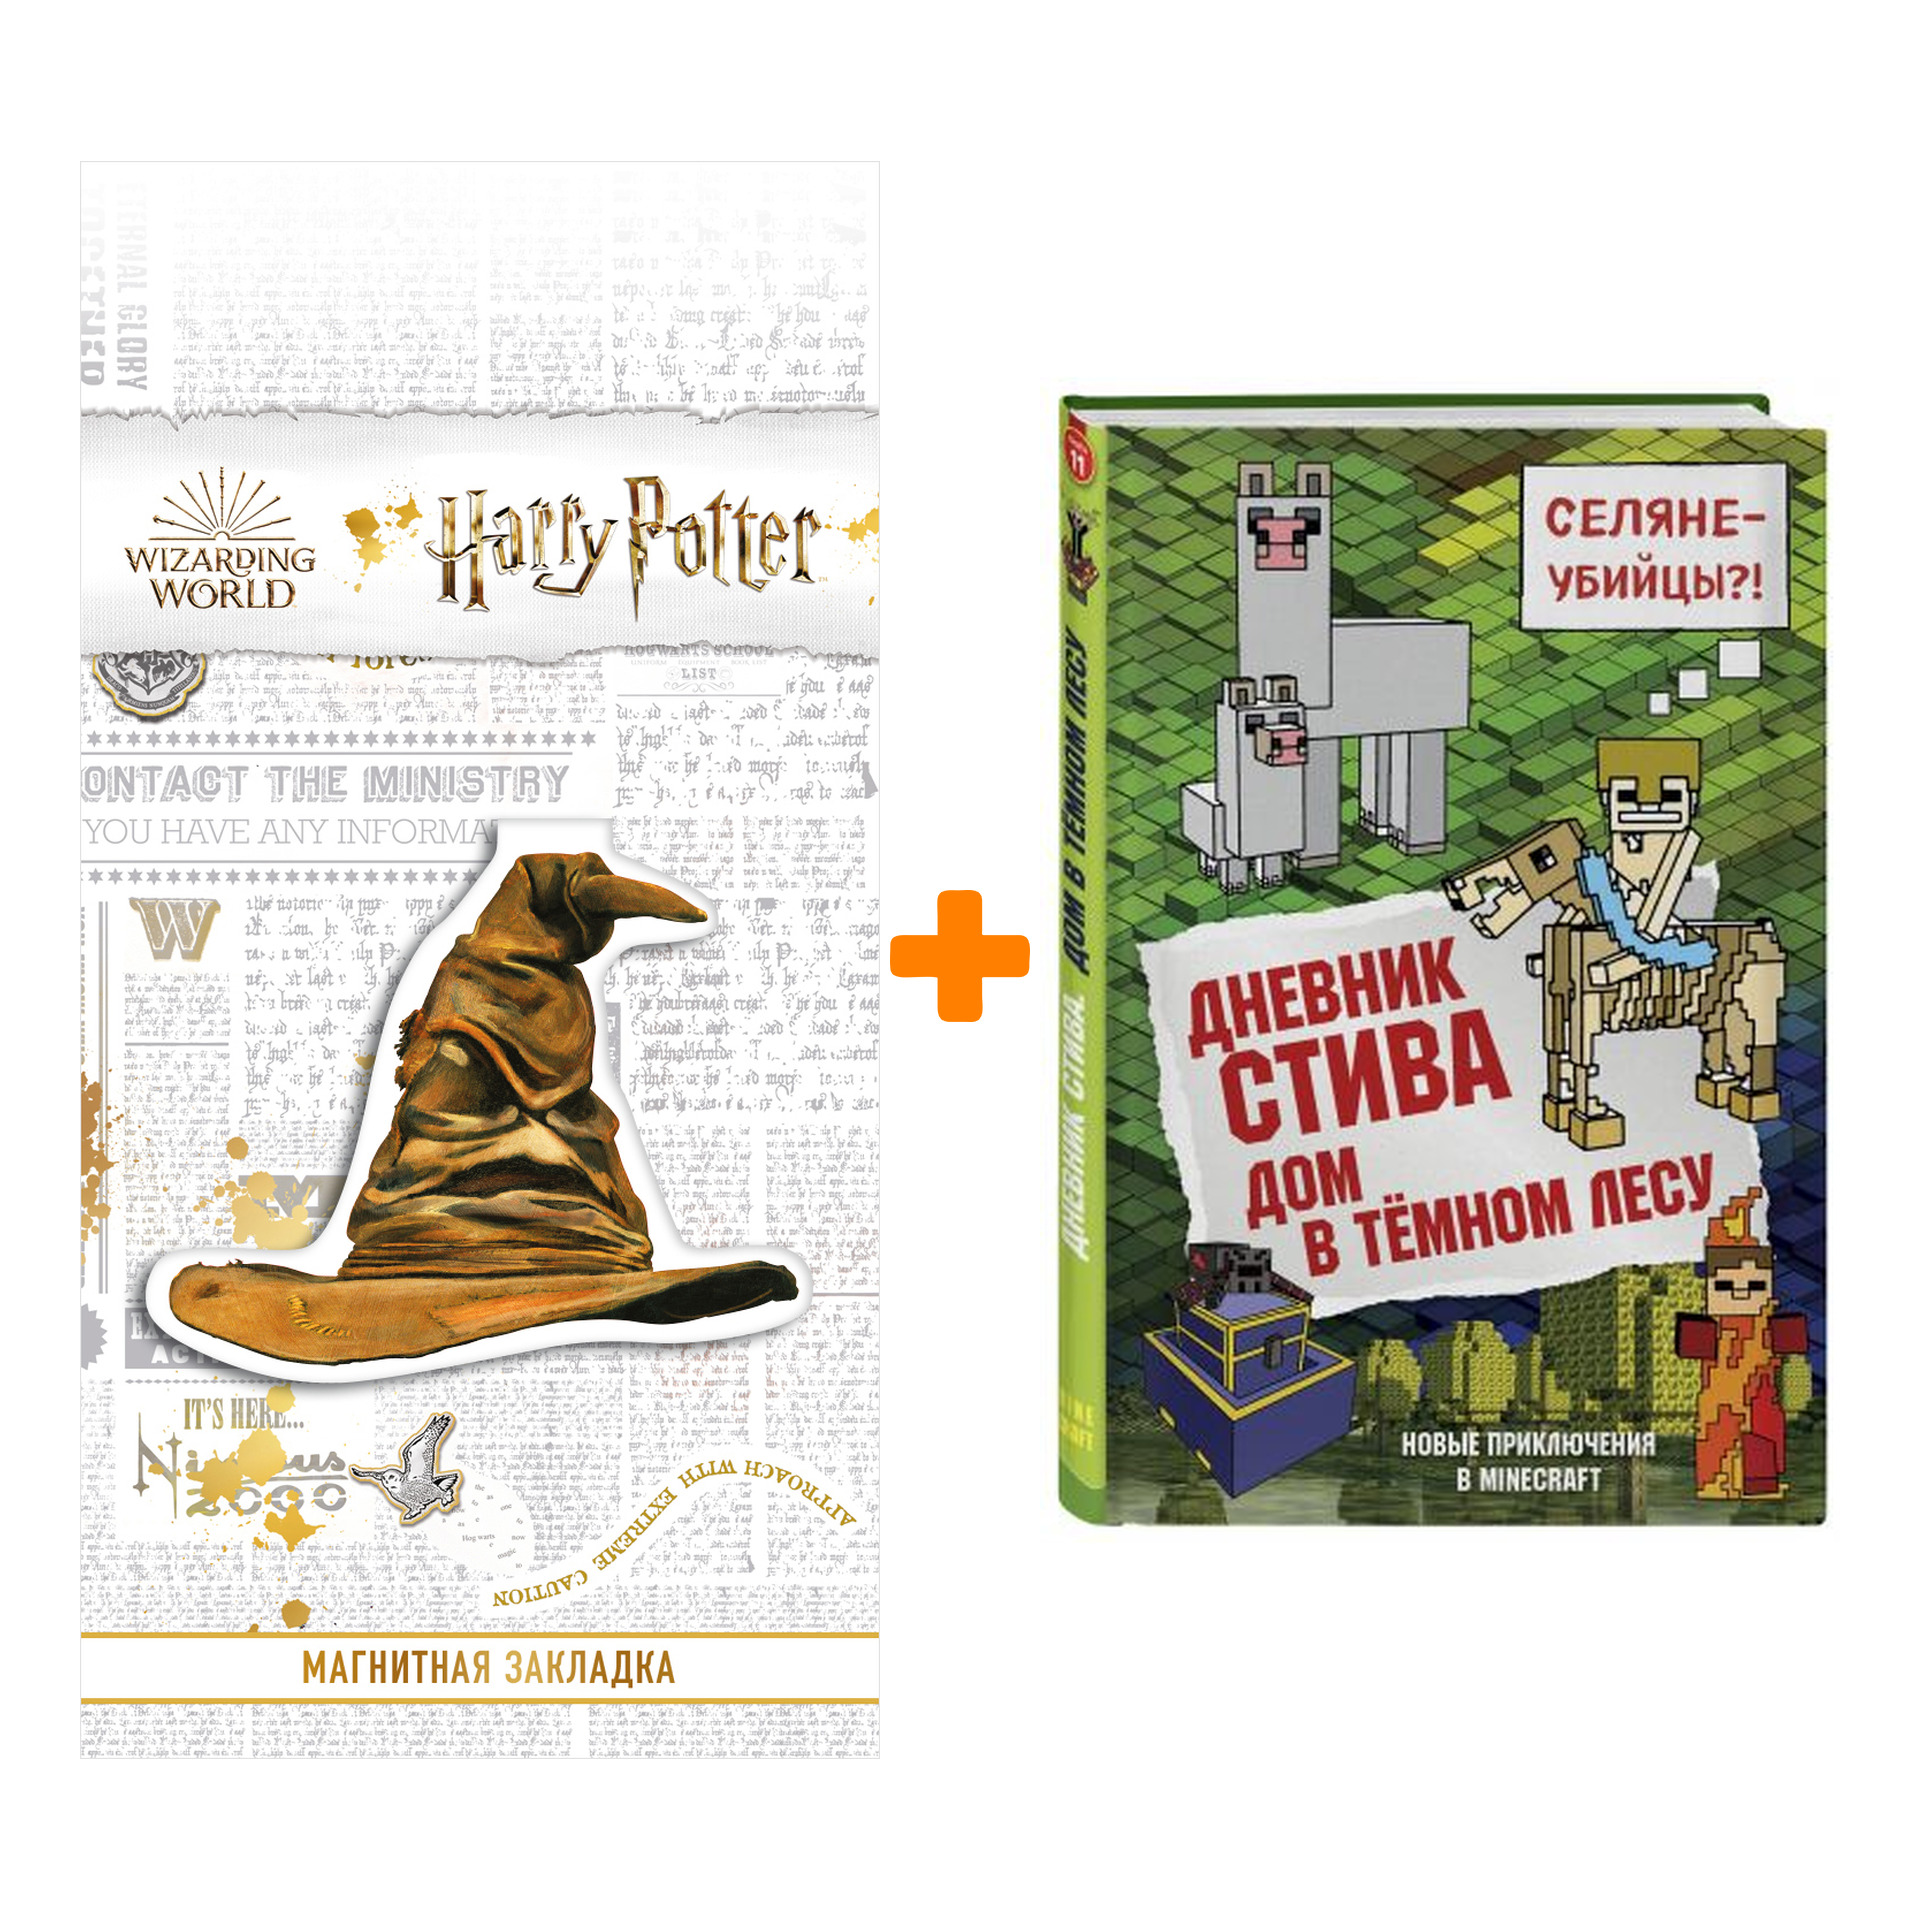 Набор Дневник Стива Книга 11 Дом в тёмном лесу + Закладка Harry Potter Распределяющая шляпа магнитная